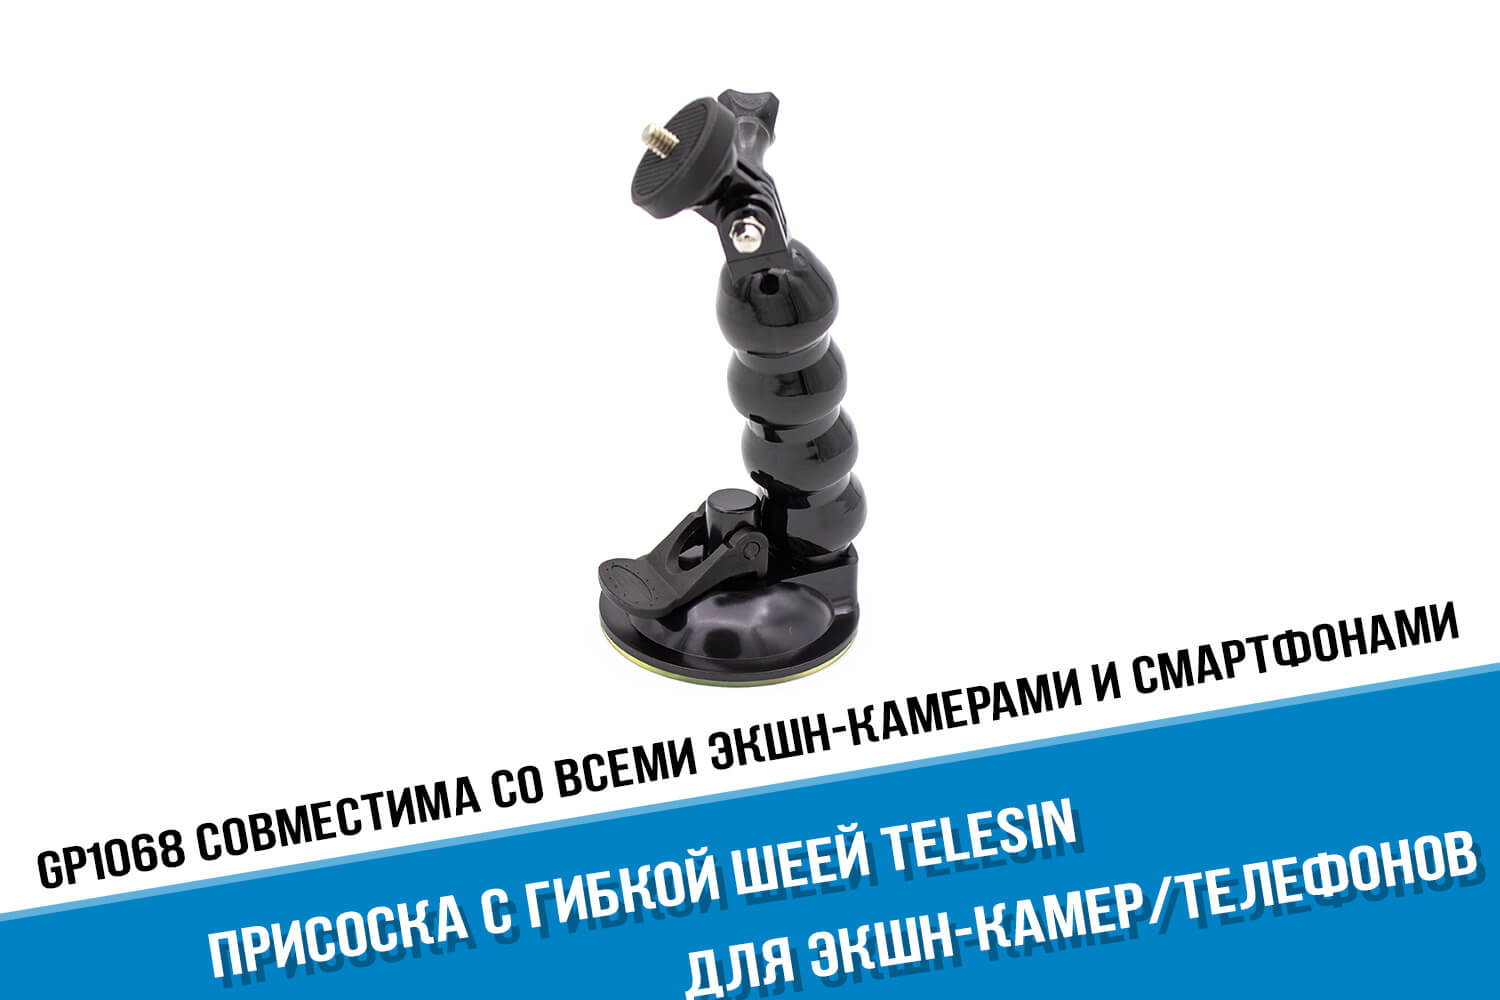 Присоска для камеры GoPro HERO с гибкой шеей фирмы Telesin